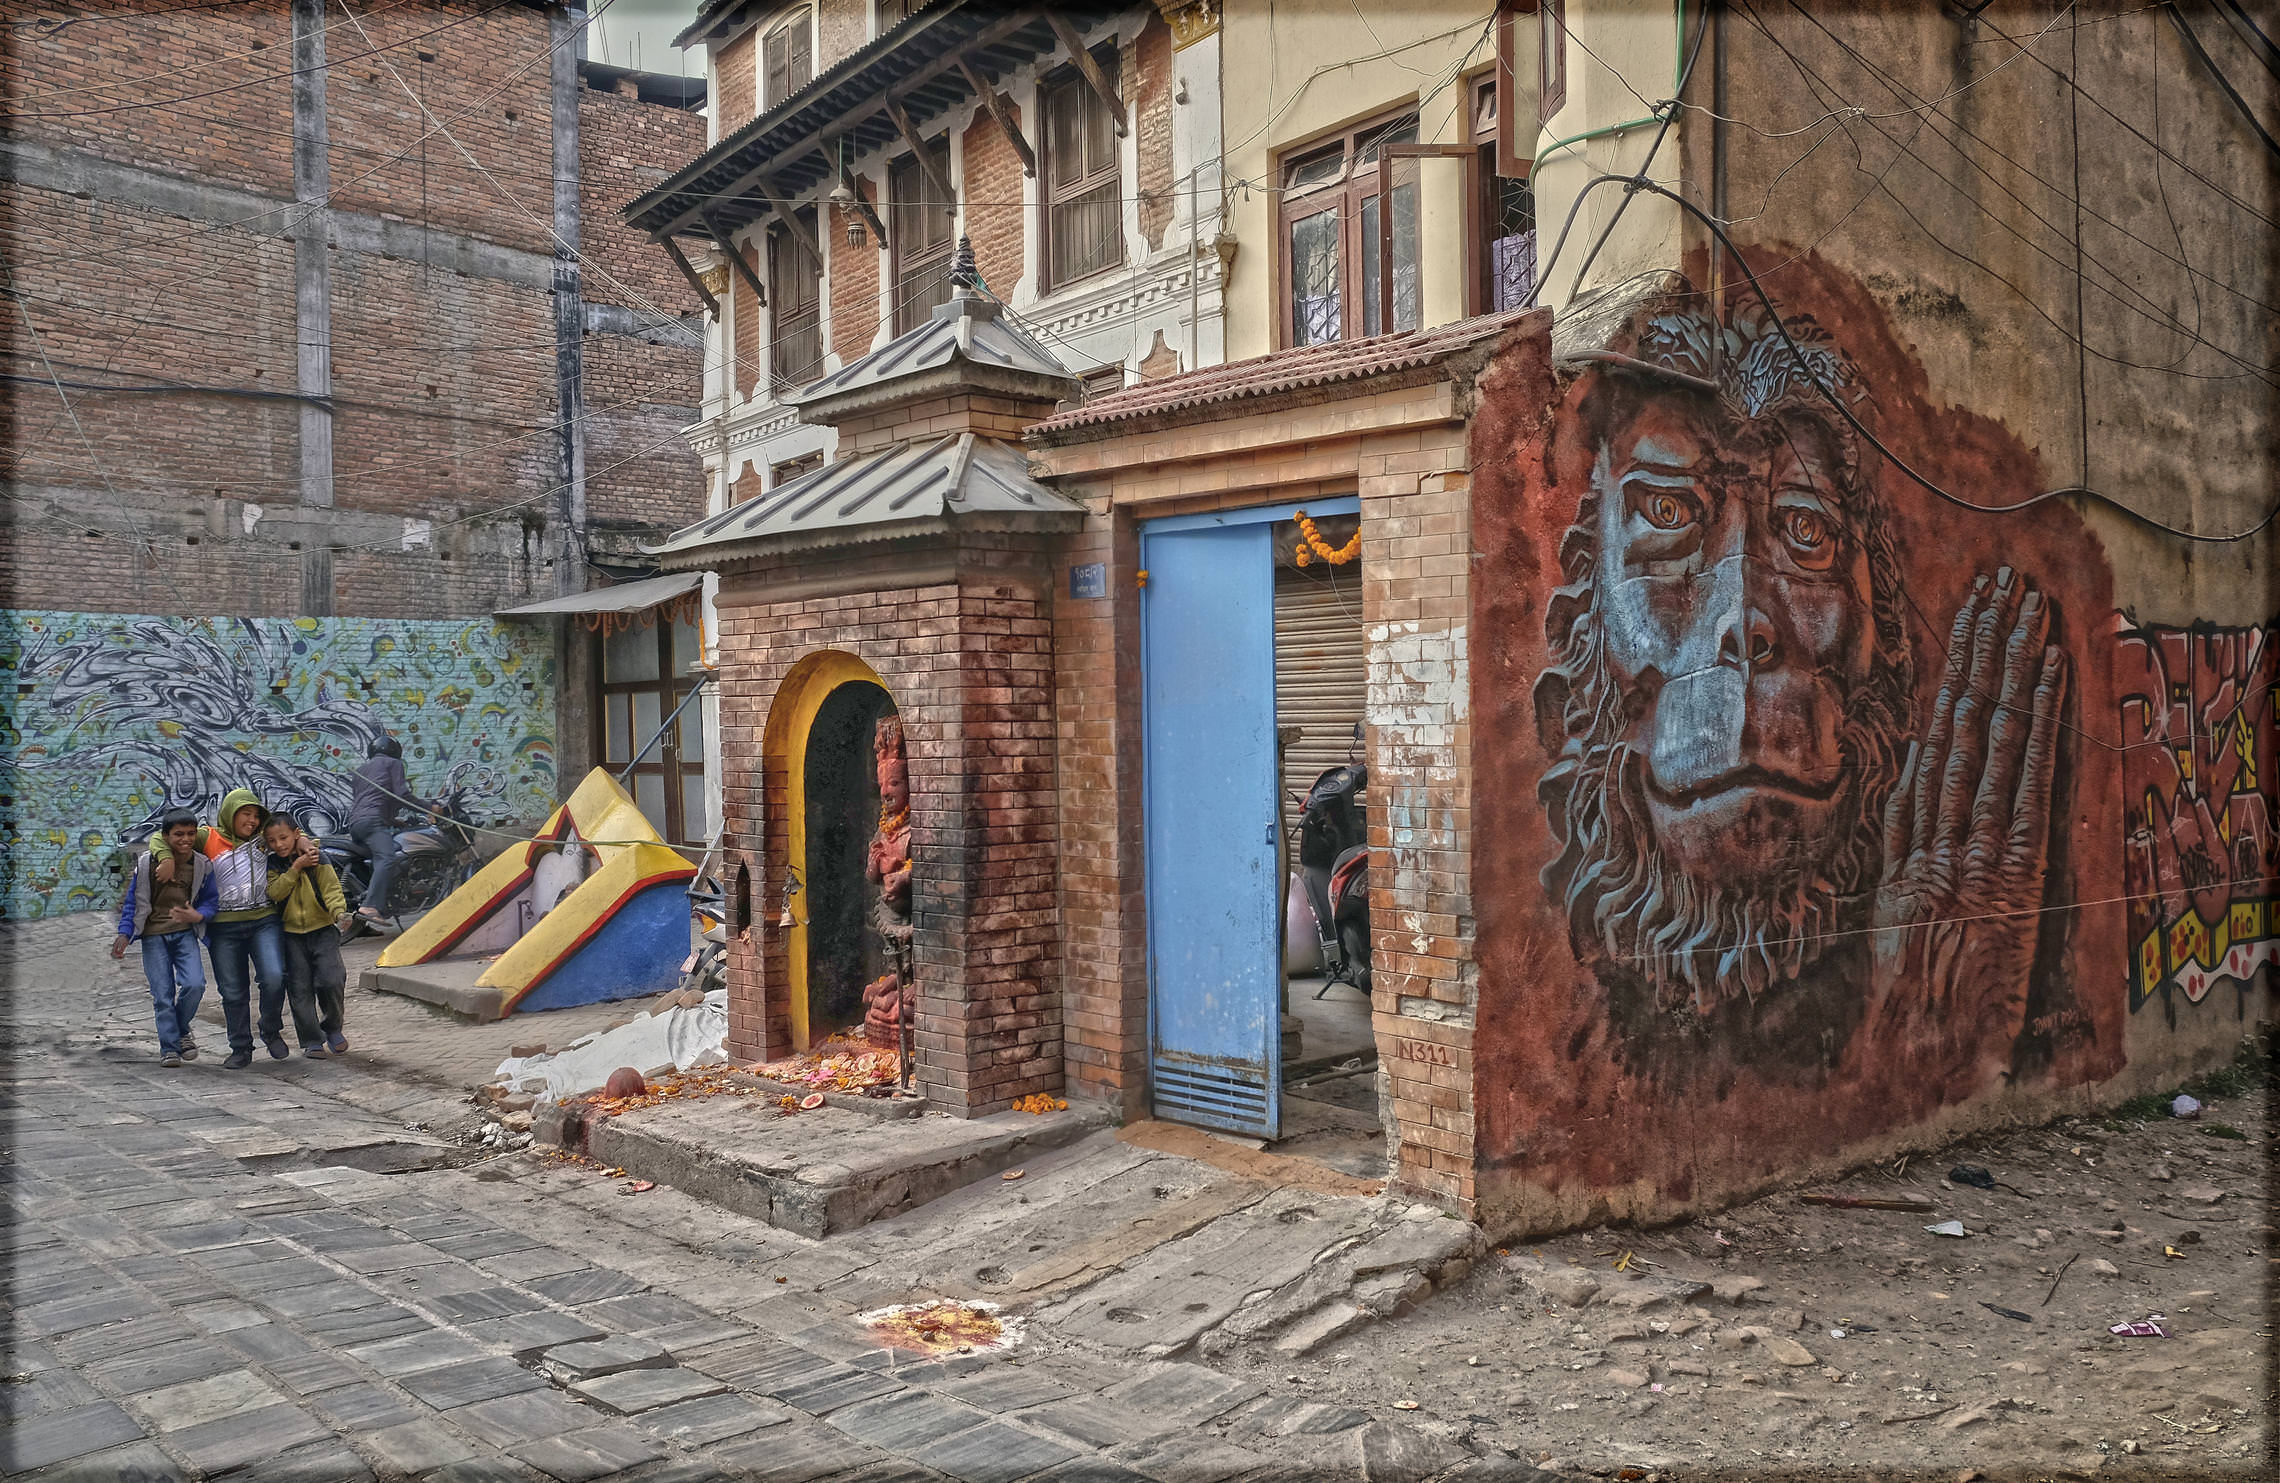 Улицы Катманду